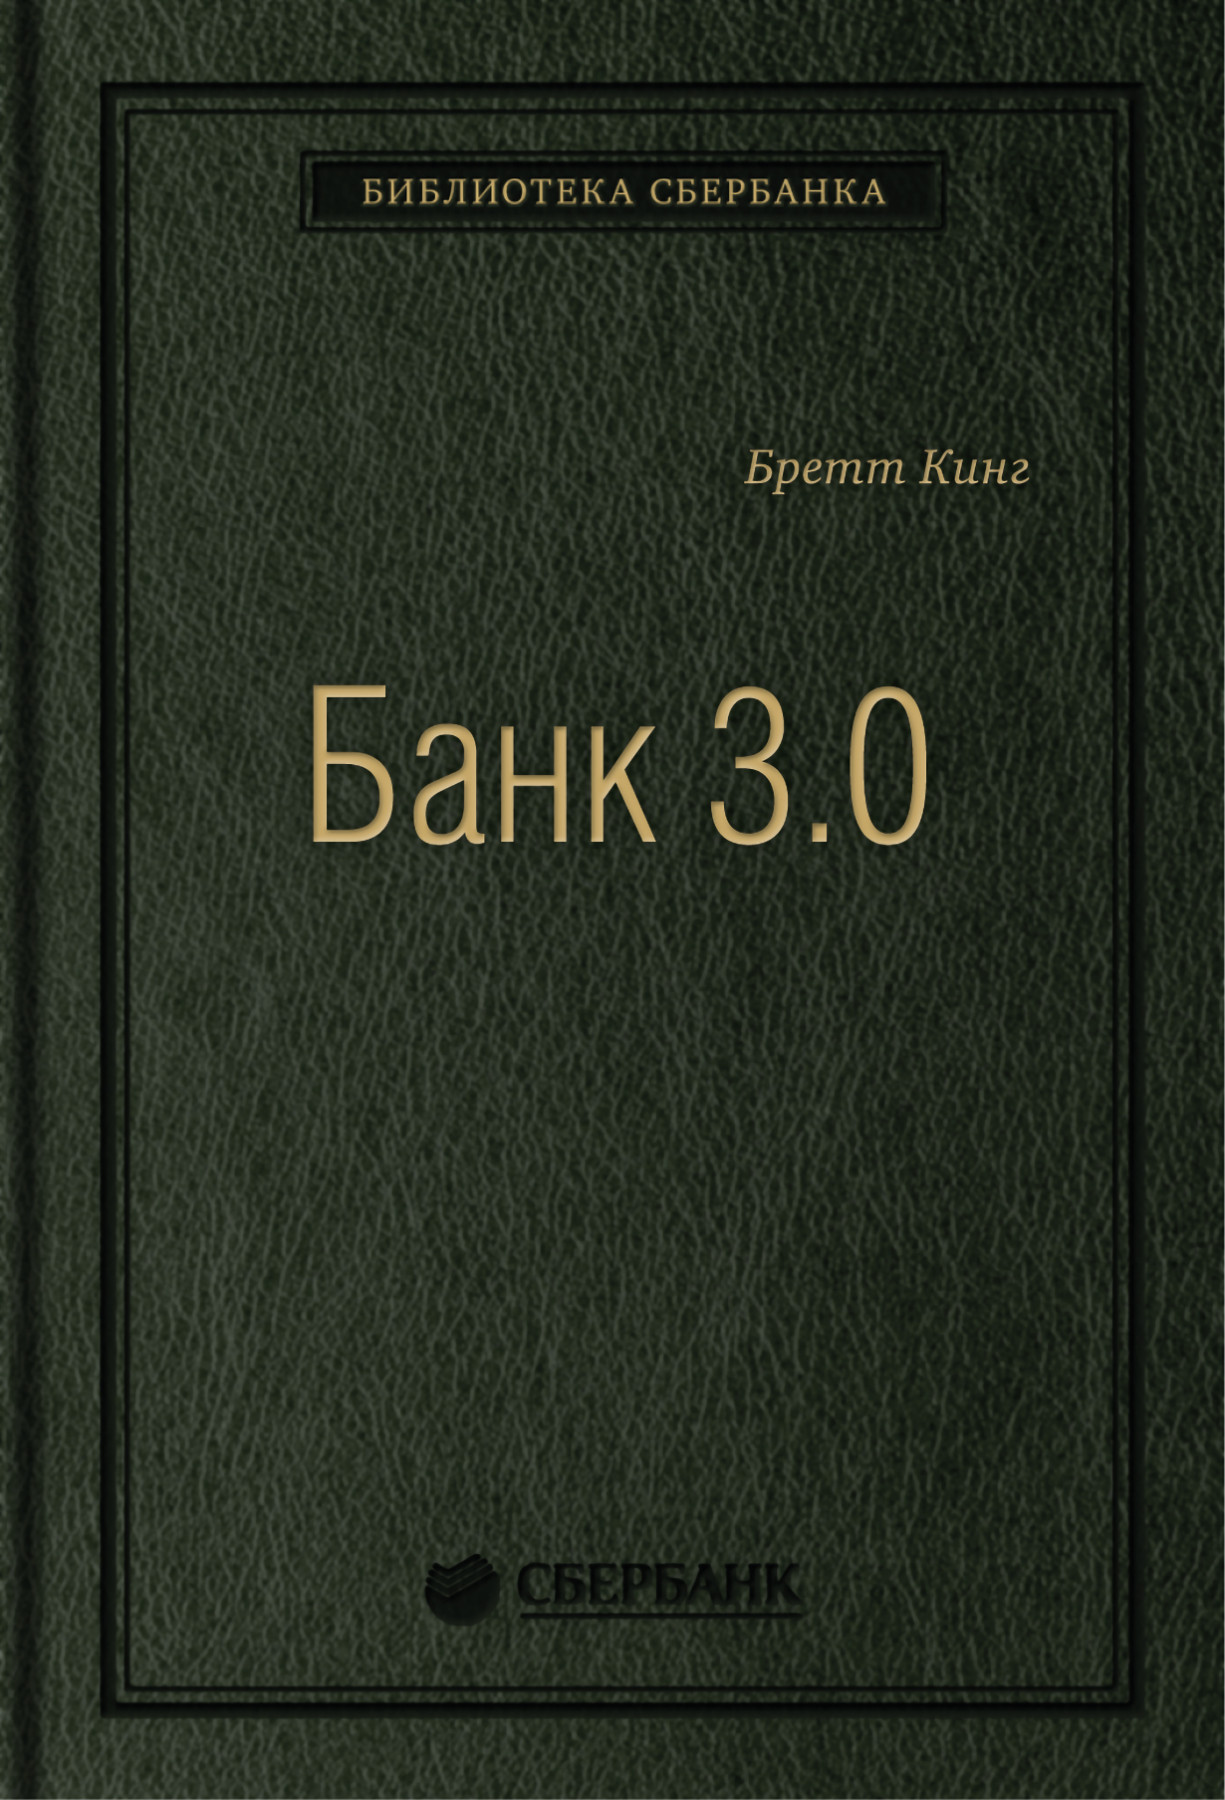 Банк 3.0 обложка.